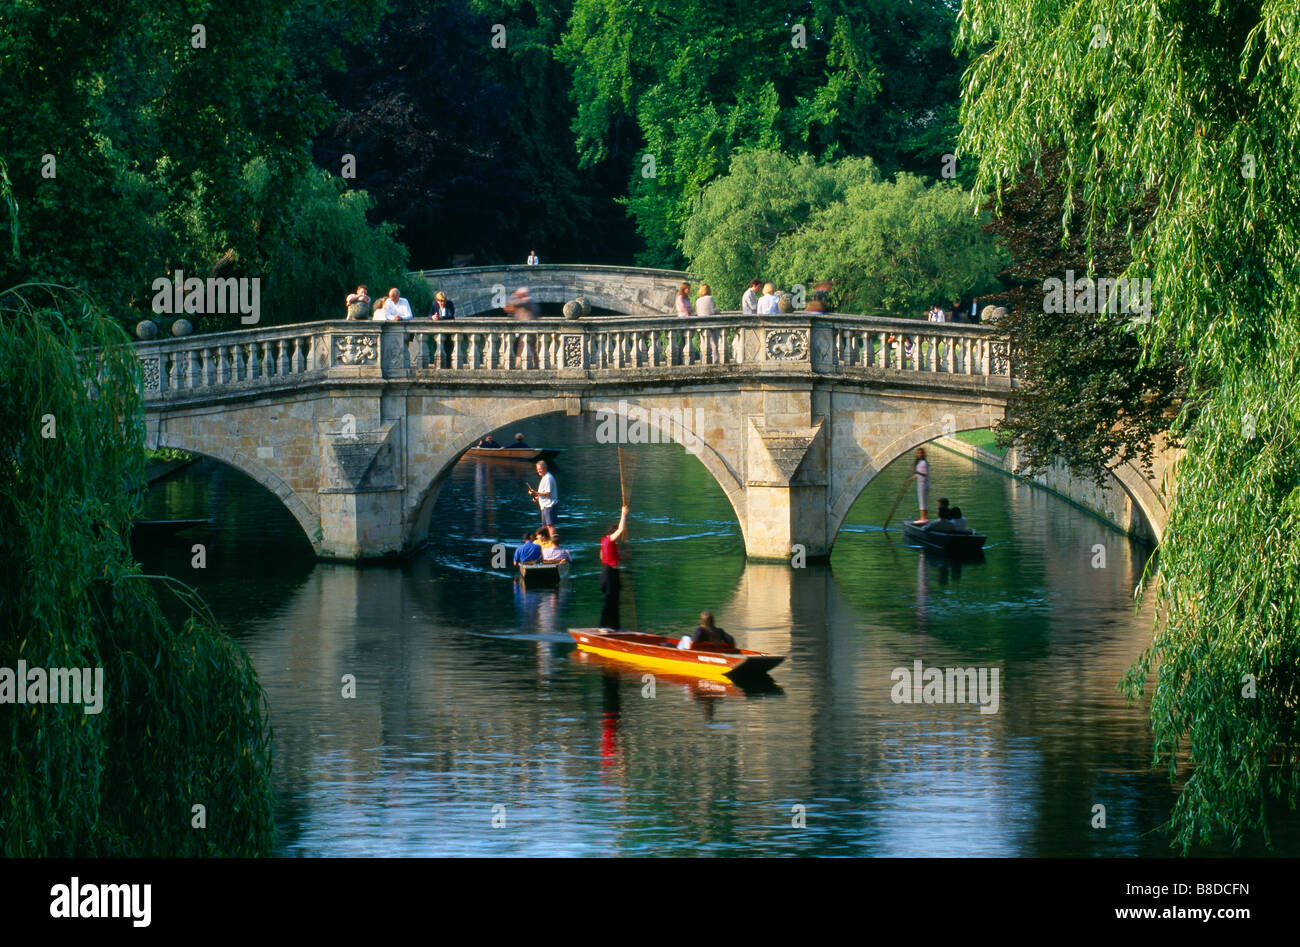 Les parieurs sur la rivière Cam, Cambridge, England, UK Banque D'Images